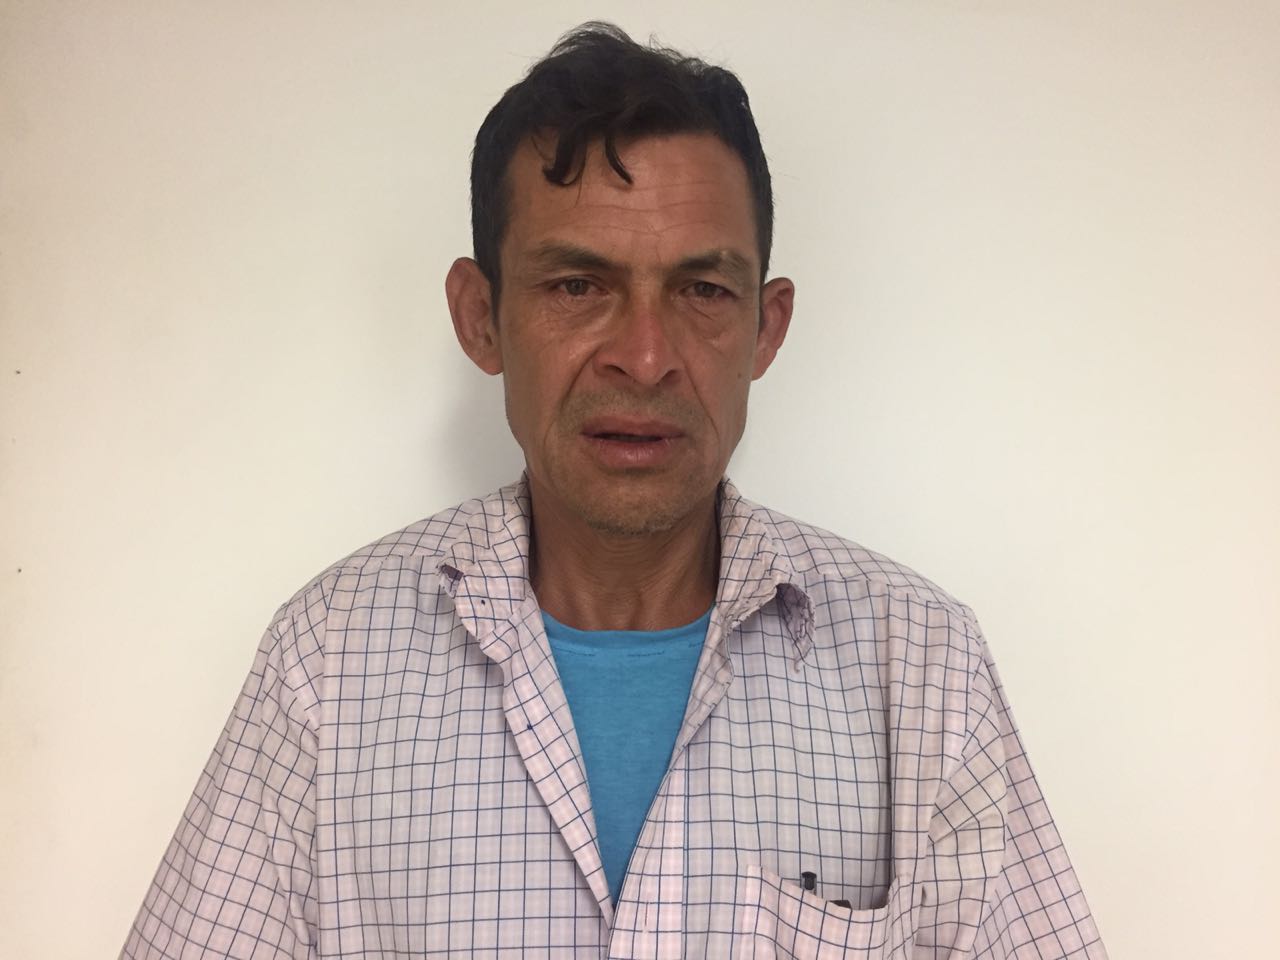 Quindiano regresó después de vivir 40 años en Venezuela. Busca a su familia para legalizar documentos de sus hijos